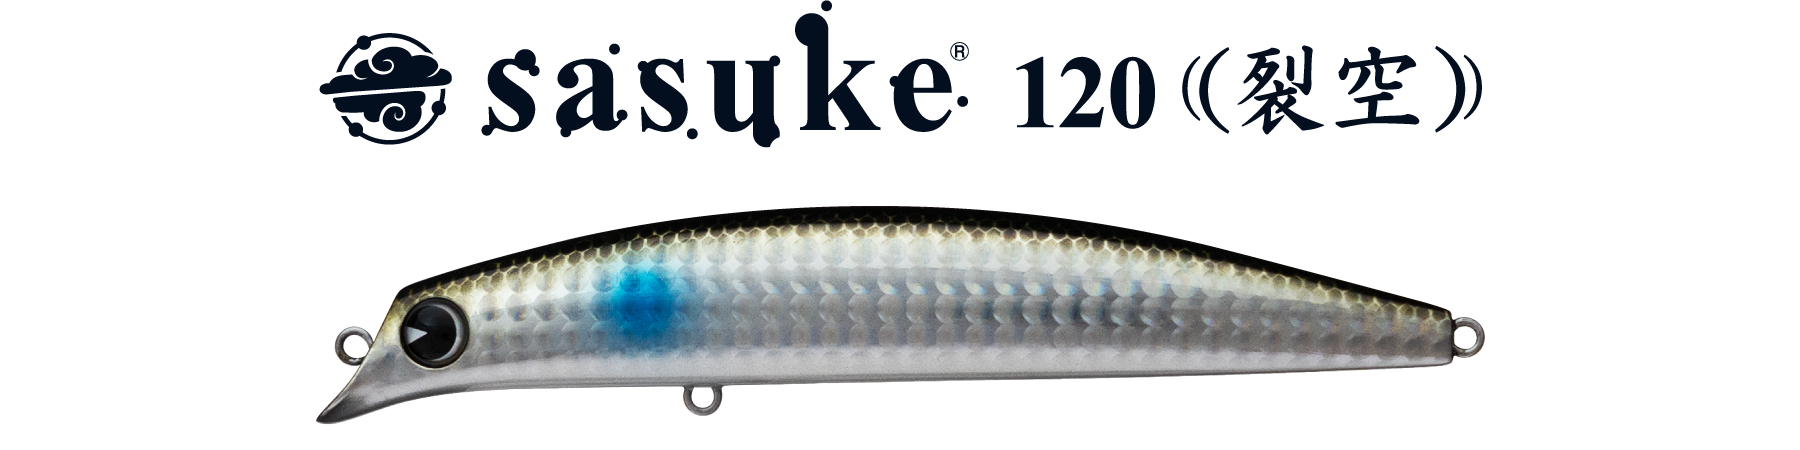 sasuke 120 裂空、解説。 | ima 公式ブランドサイト-オンラインストア